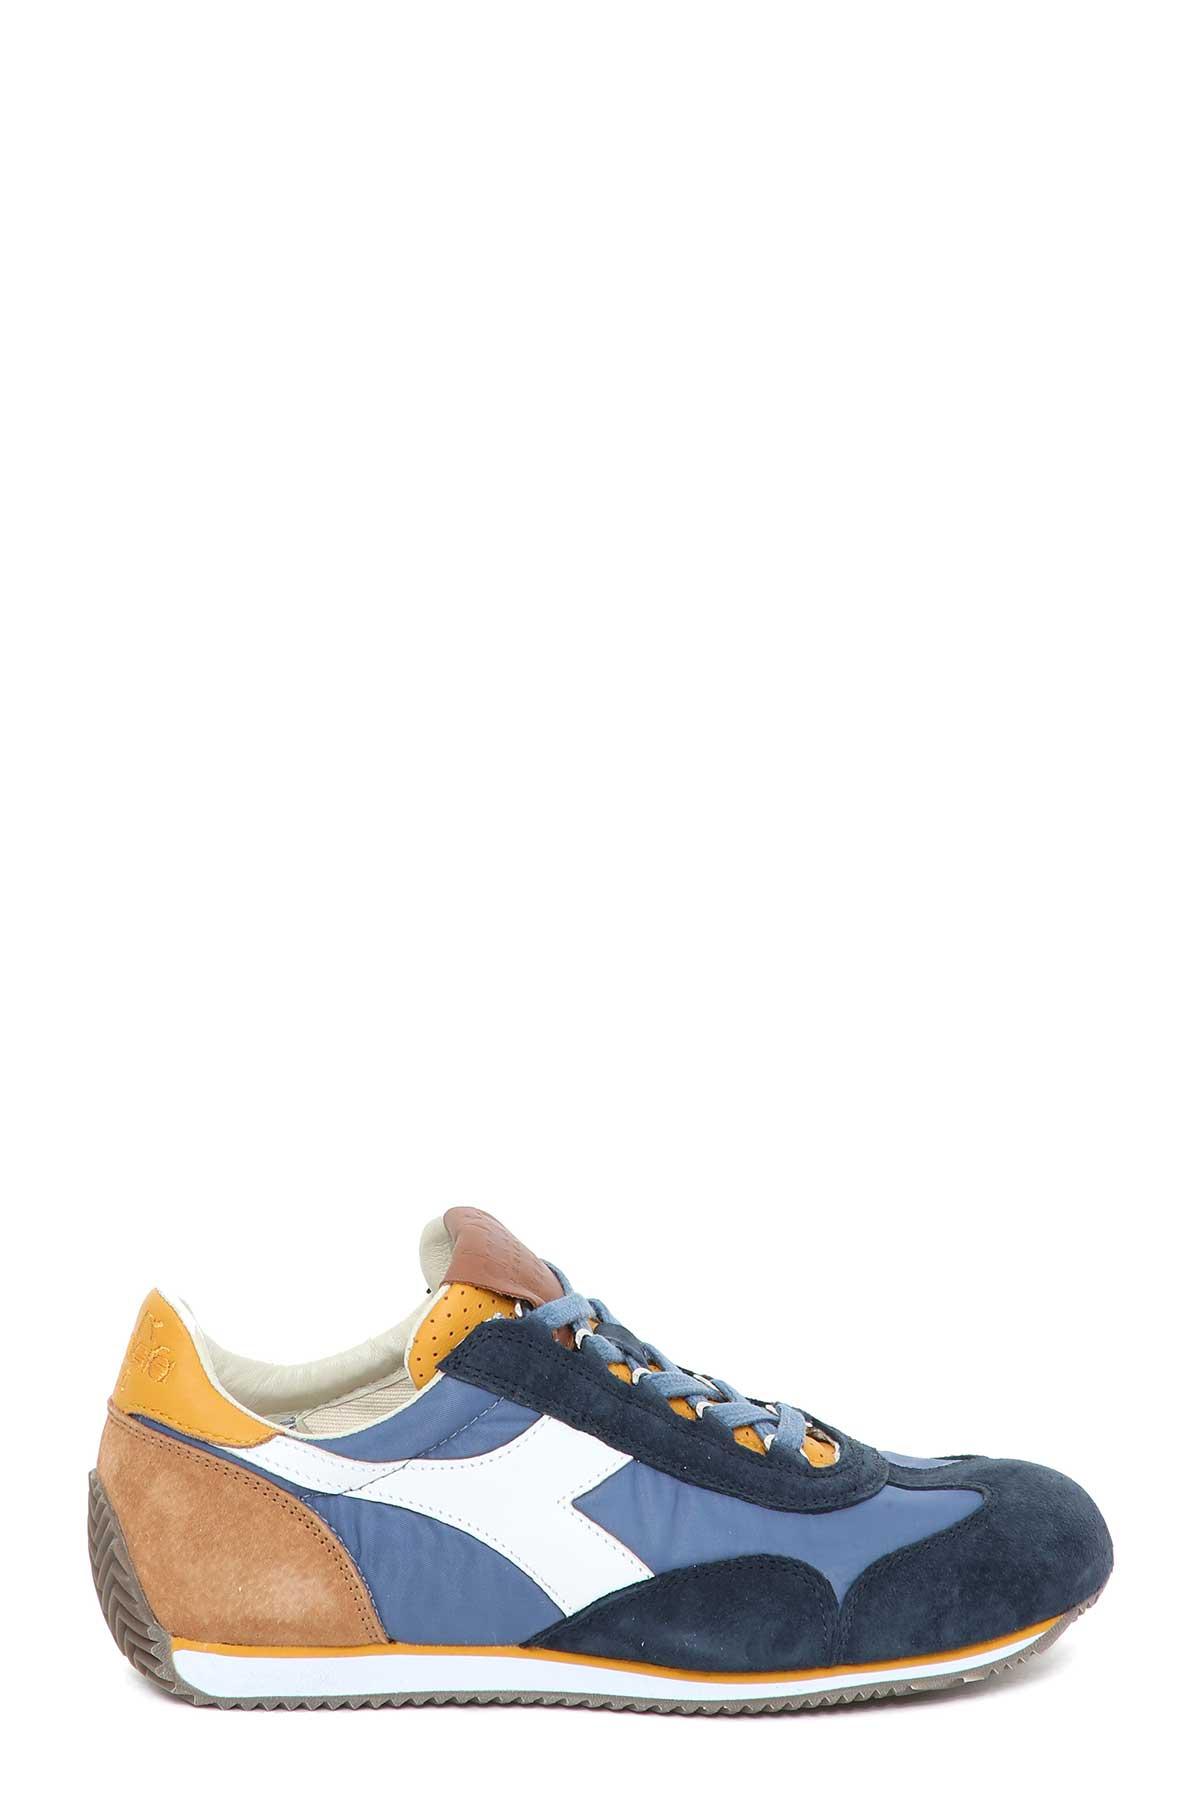 Diadora Equipe Ita Sneaker In Blu-giallo | ModeSens